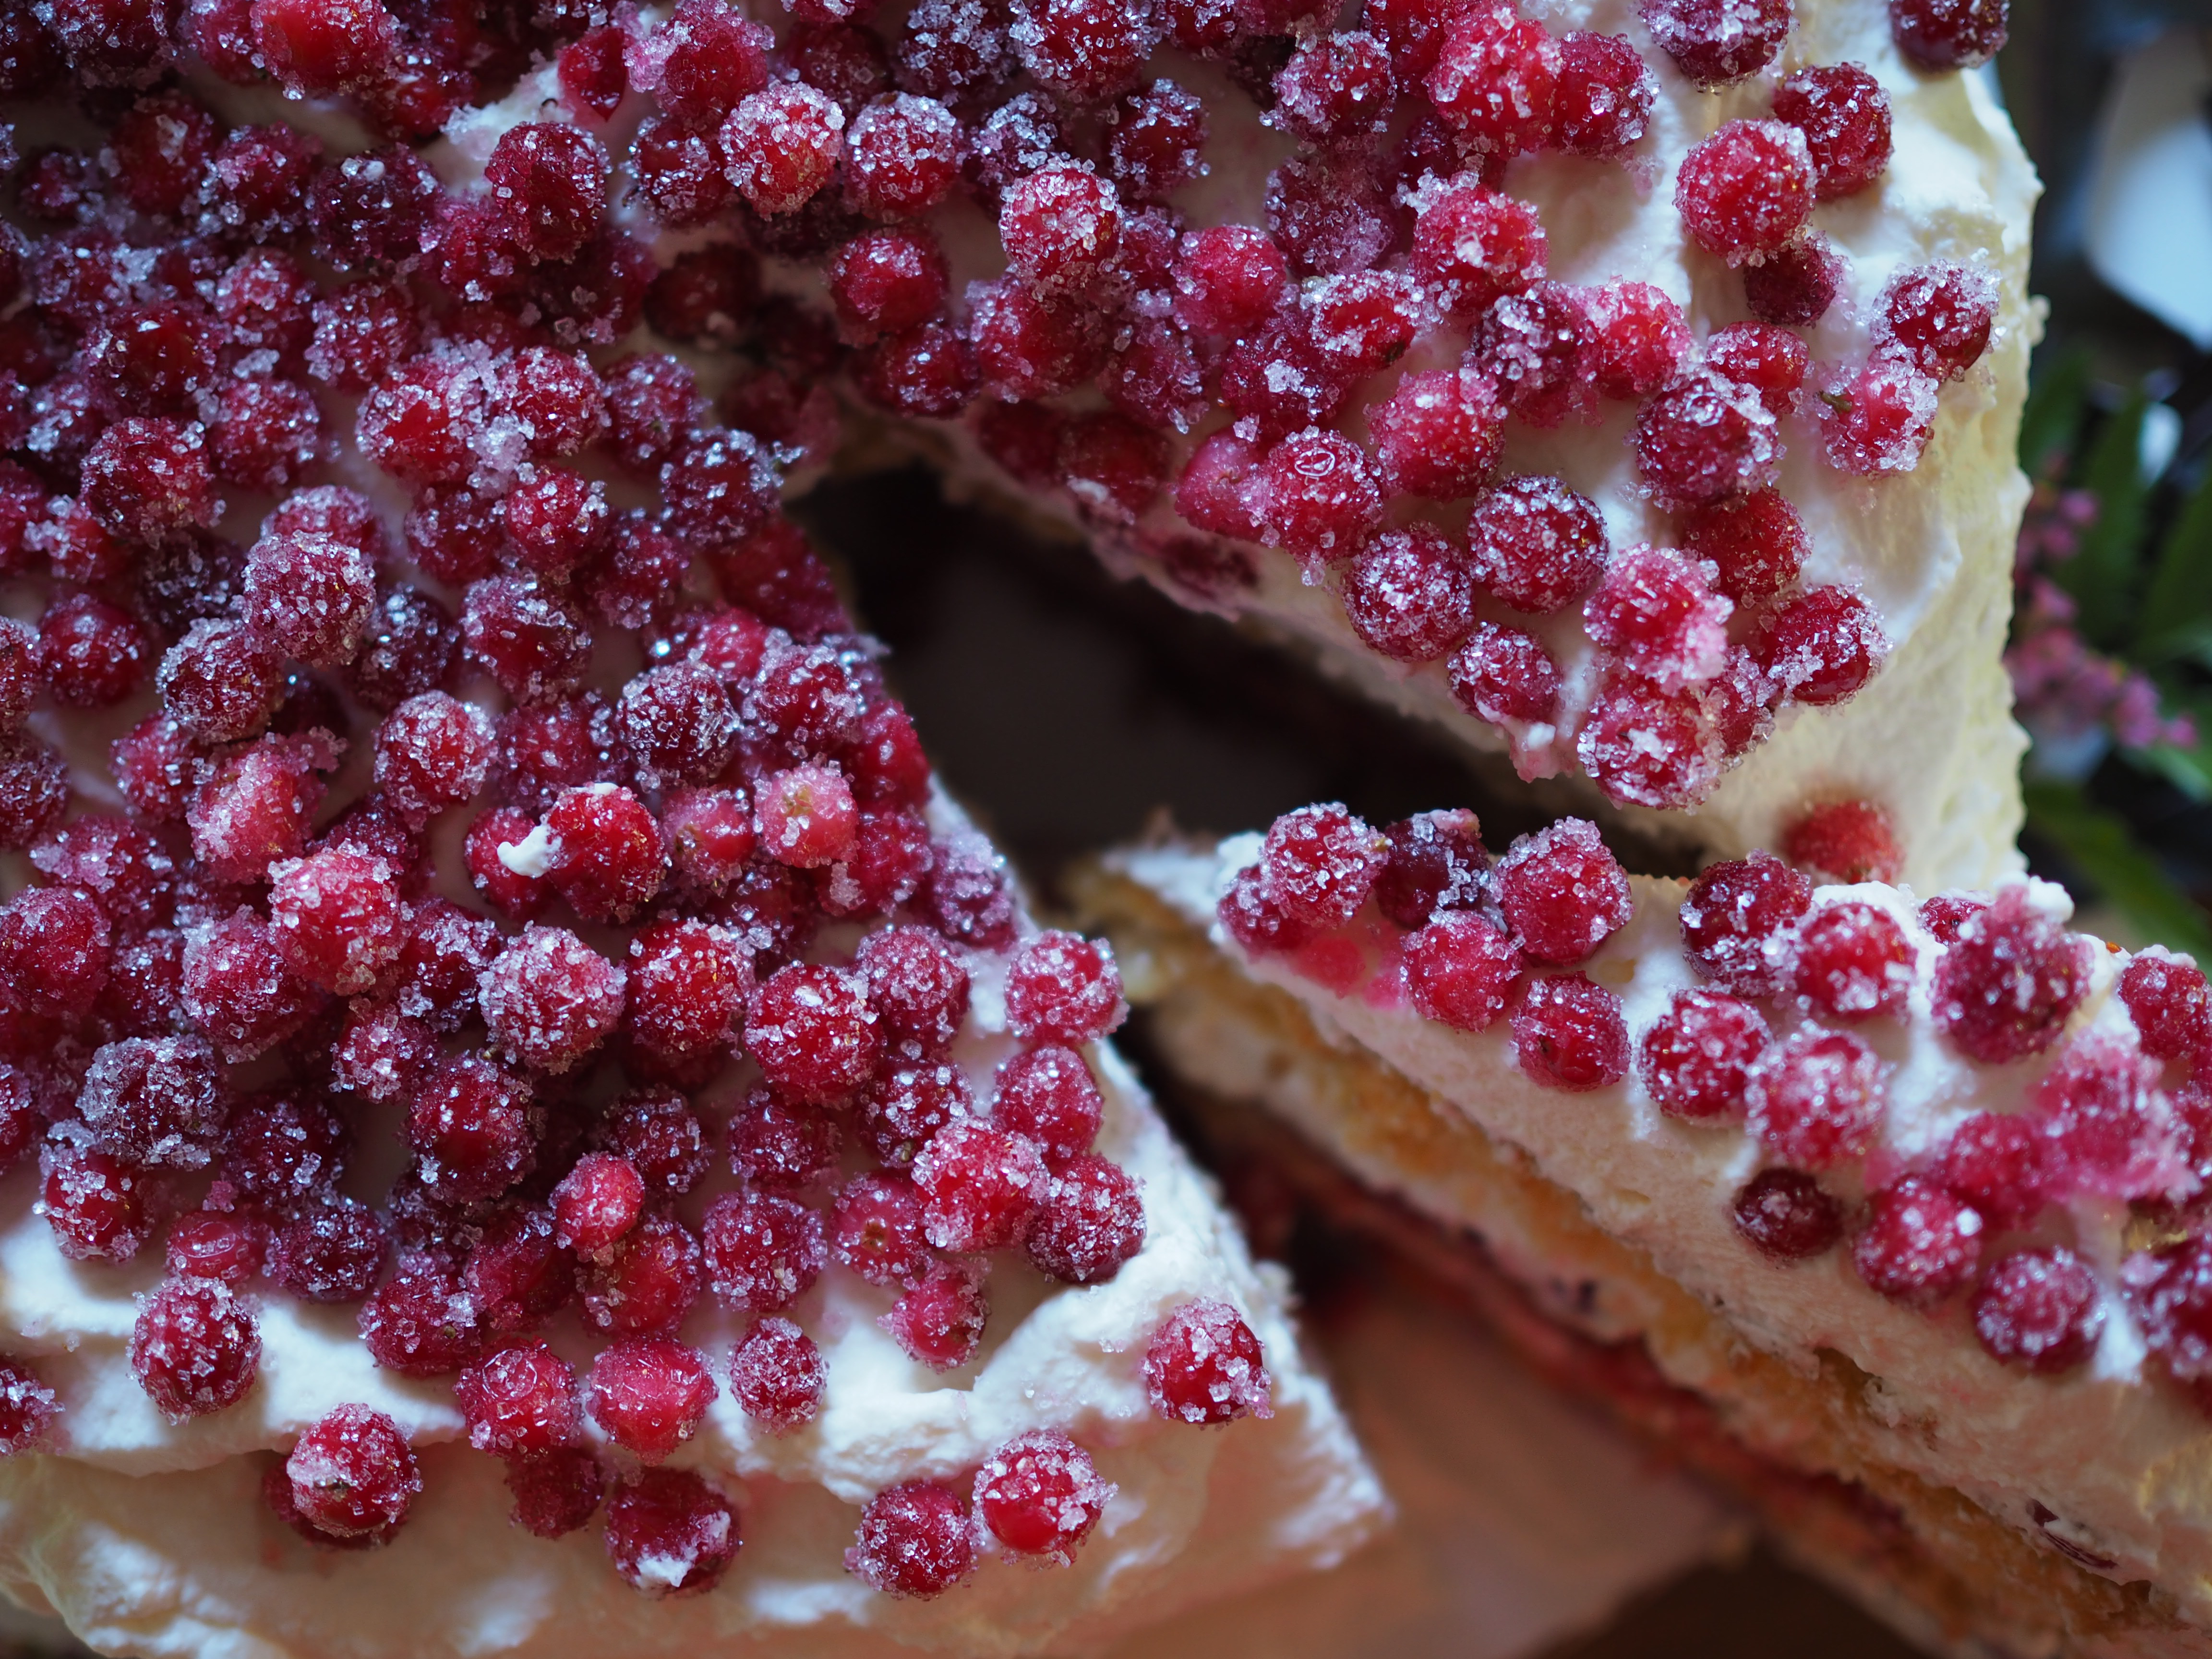 Bløtkake med Tyttebaer (Norwegian Layer Cake with Lingonberries)